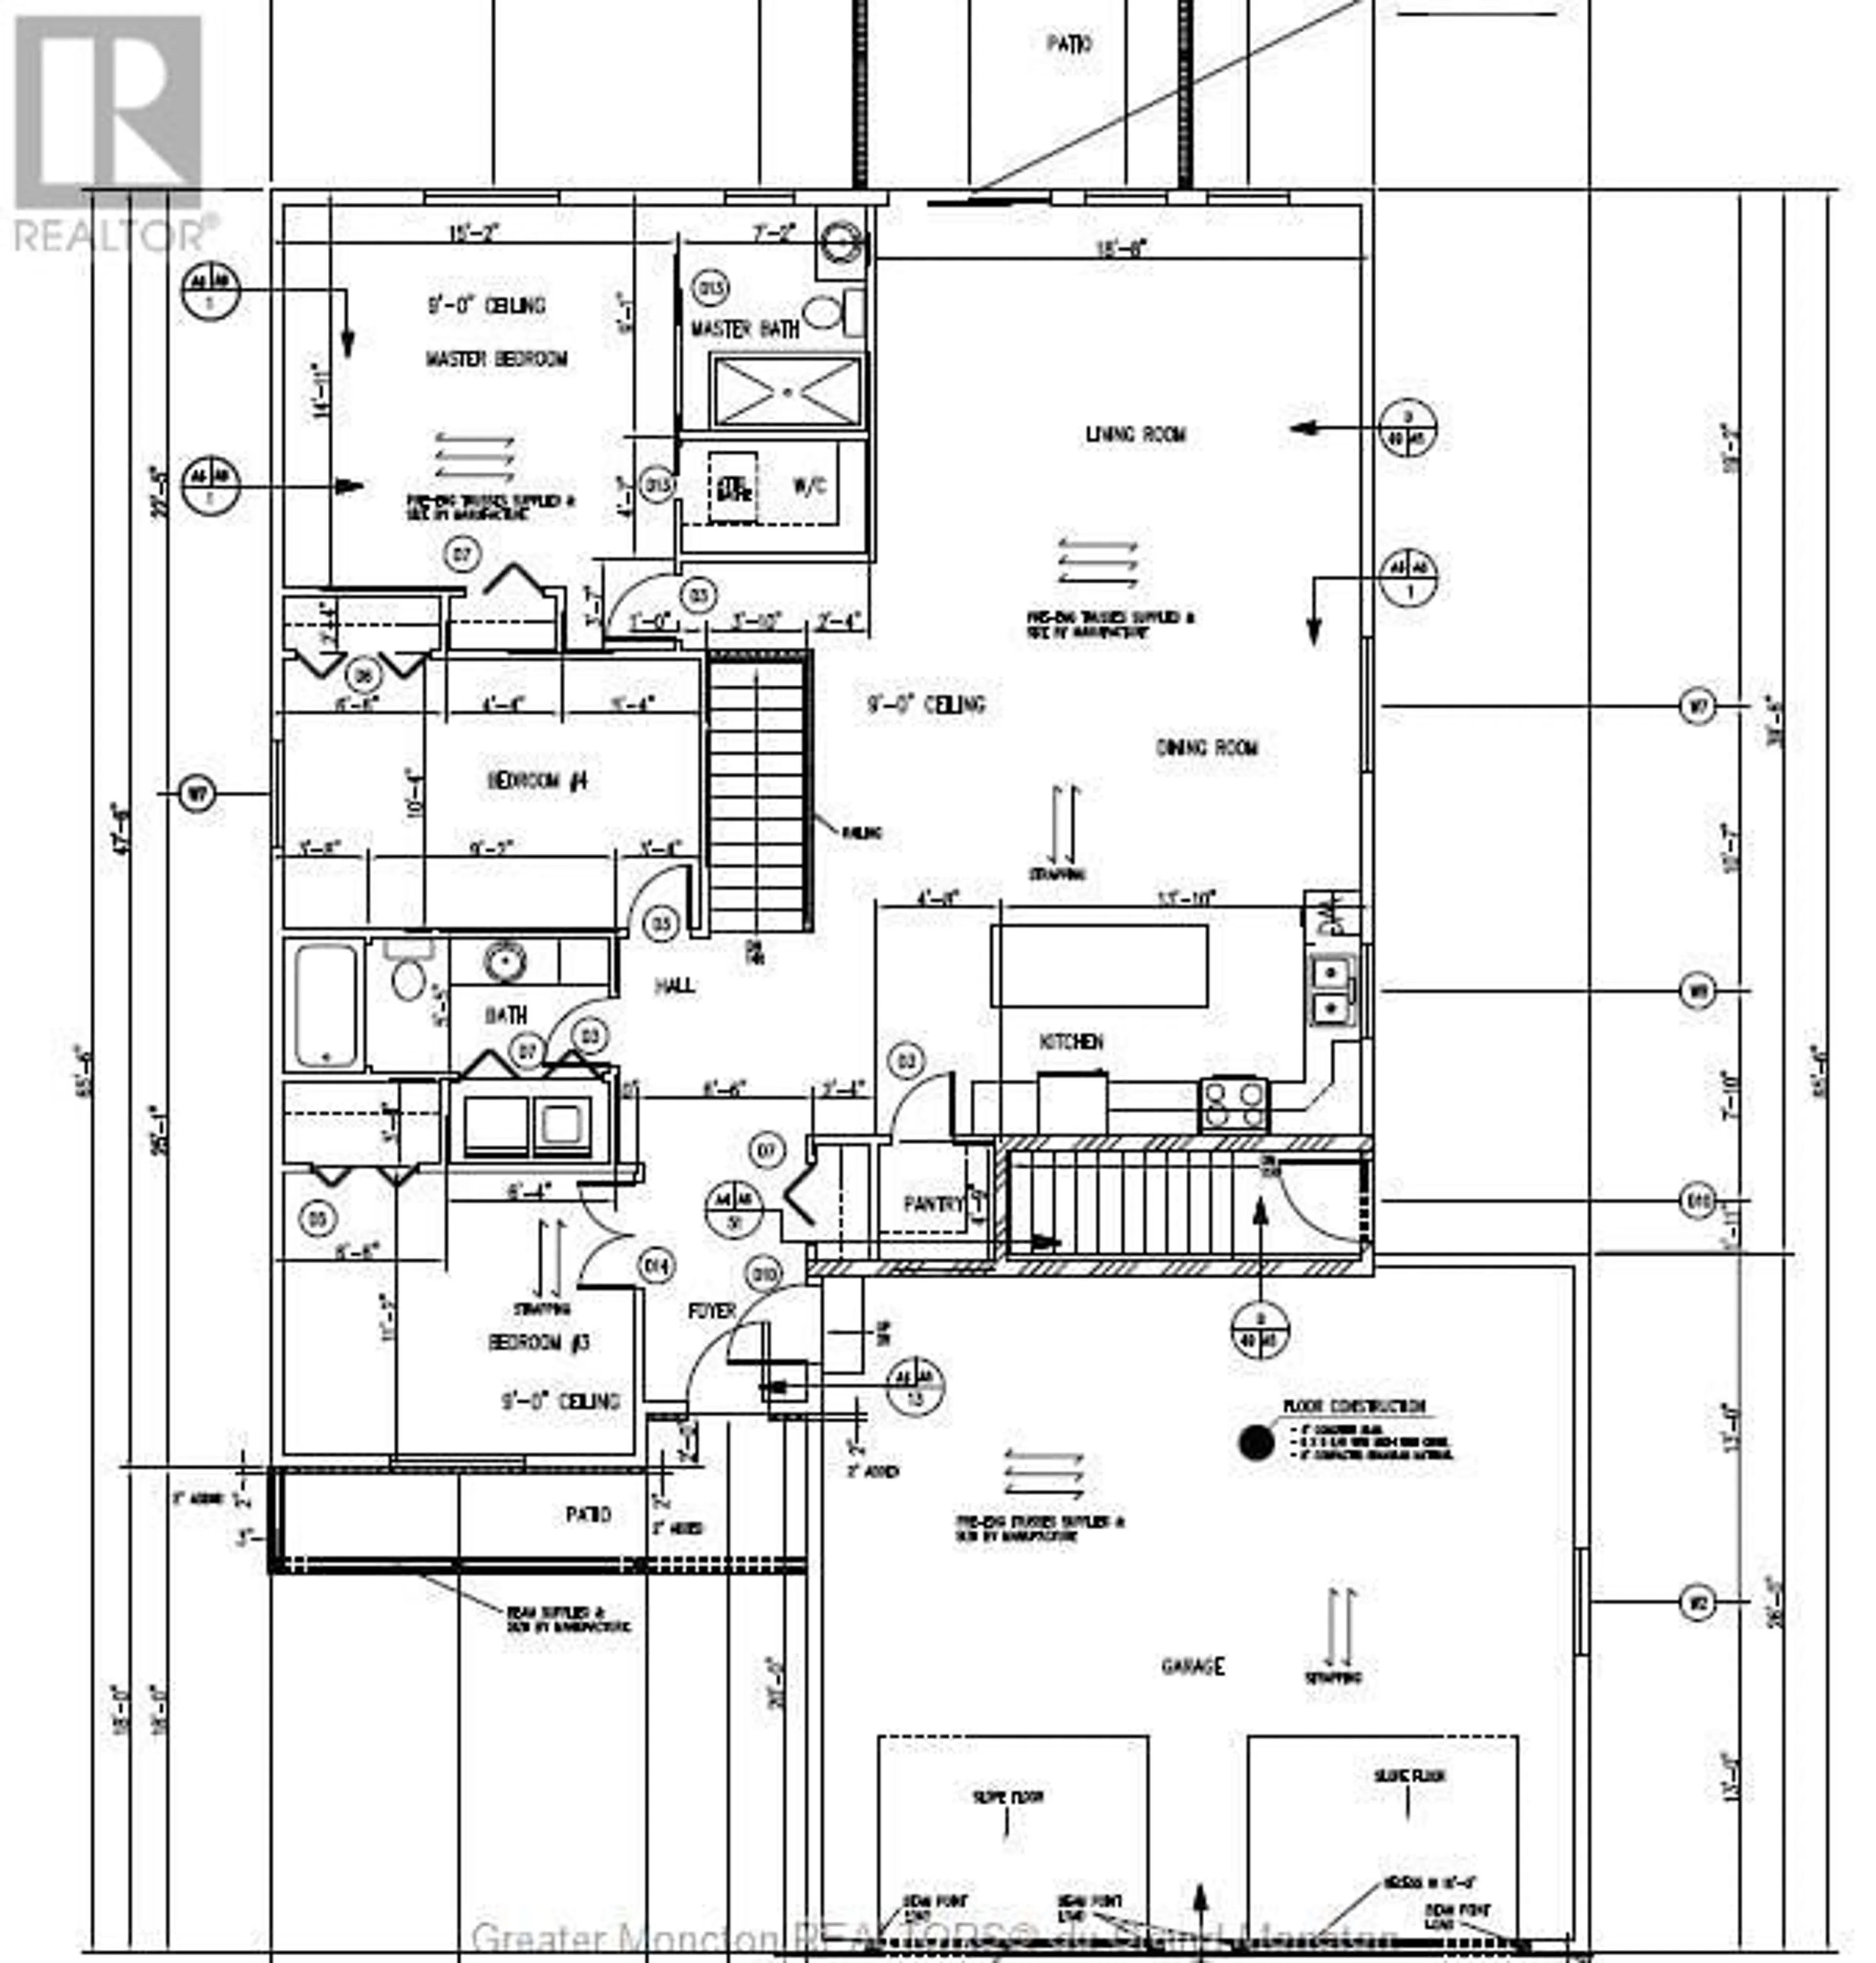 Floor plan for 22 Rosebank, Riverview New Brunswick e1b0r6